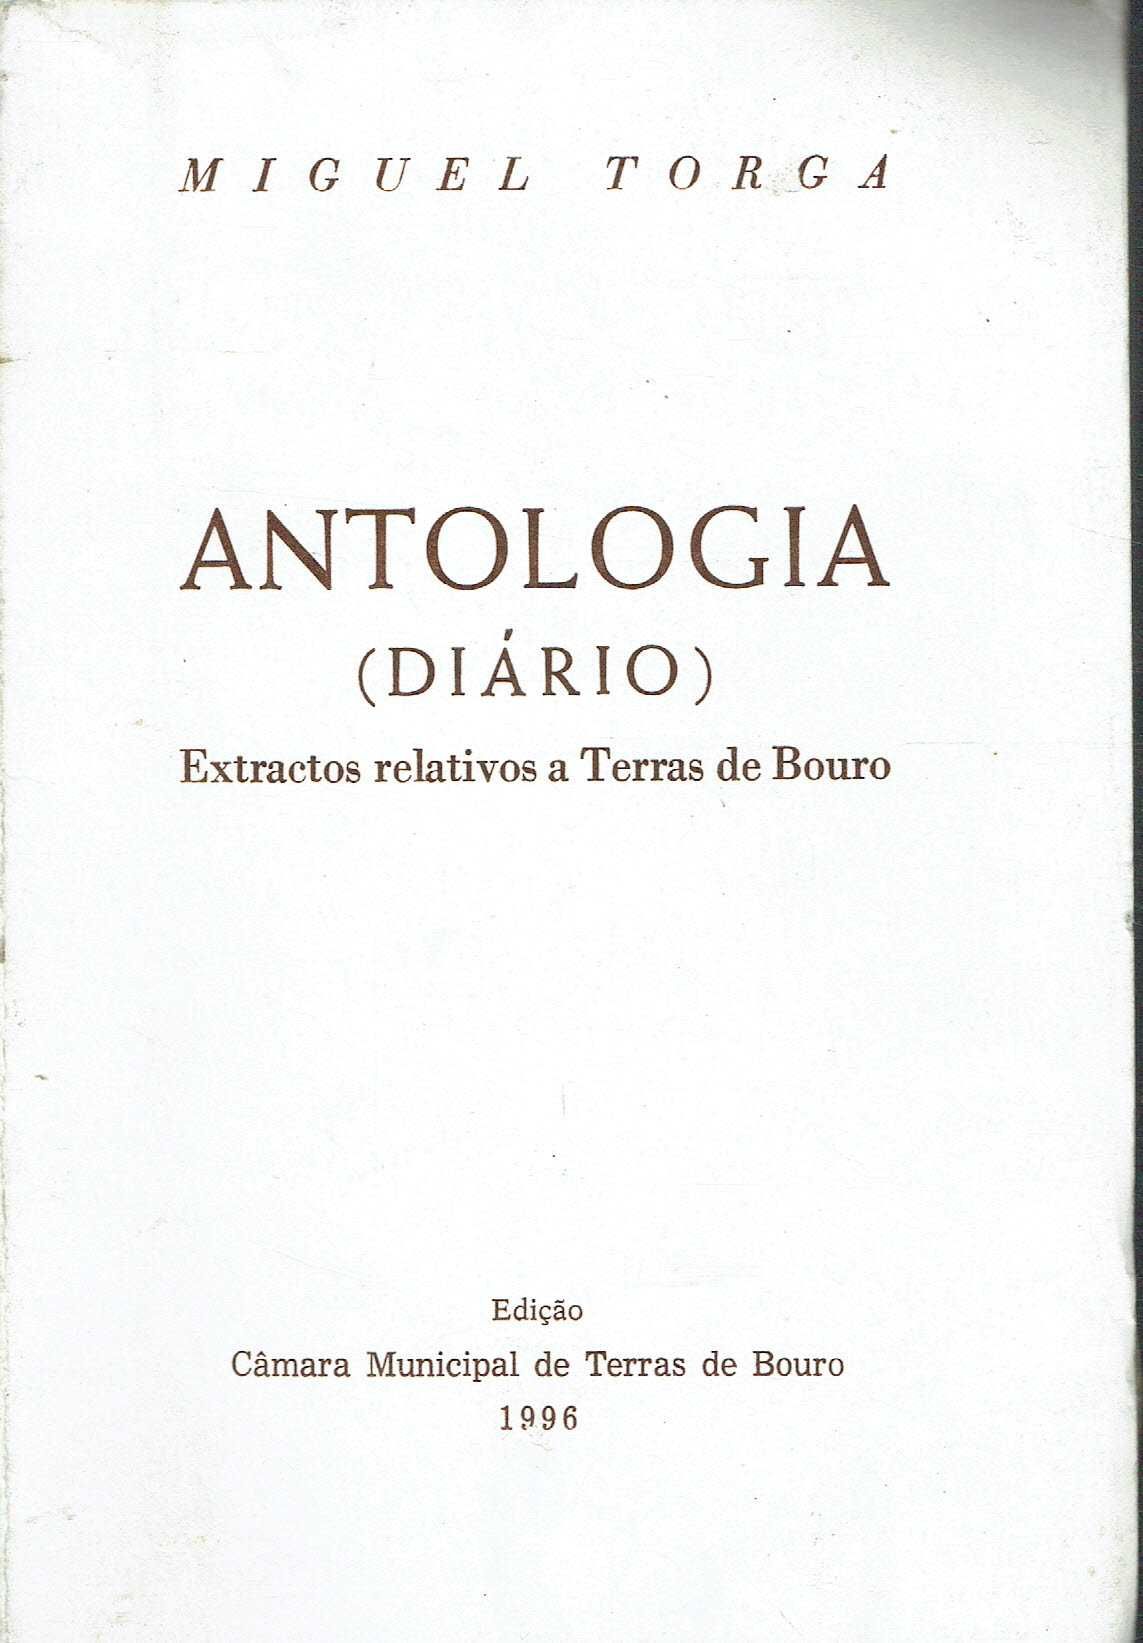 4906
Antologia : diário: relativos a Terras de Bouro 
de Miguel Torga.